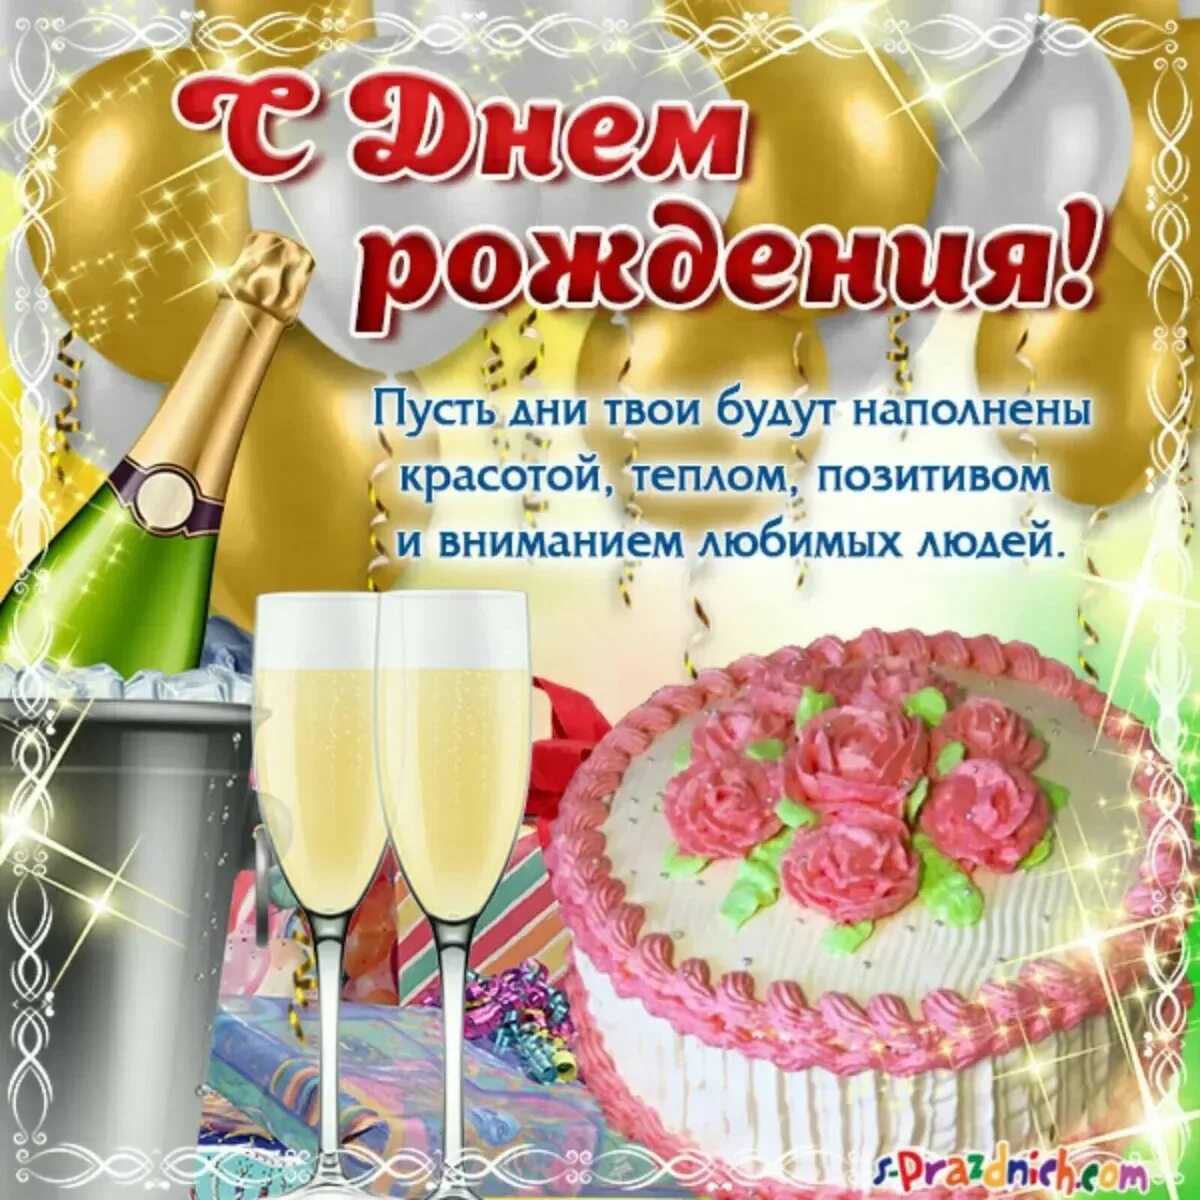 С днем рождения. Поздравления с днём рождения. Света с днём рождения поздравления. Поздравления с днём рождения с тортом и шампанским. Света с днем рождения картинки поздравления